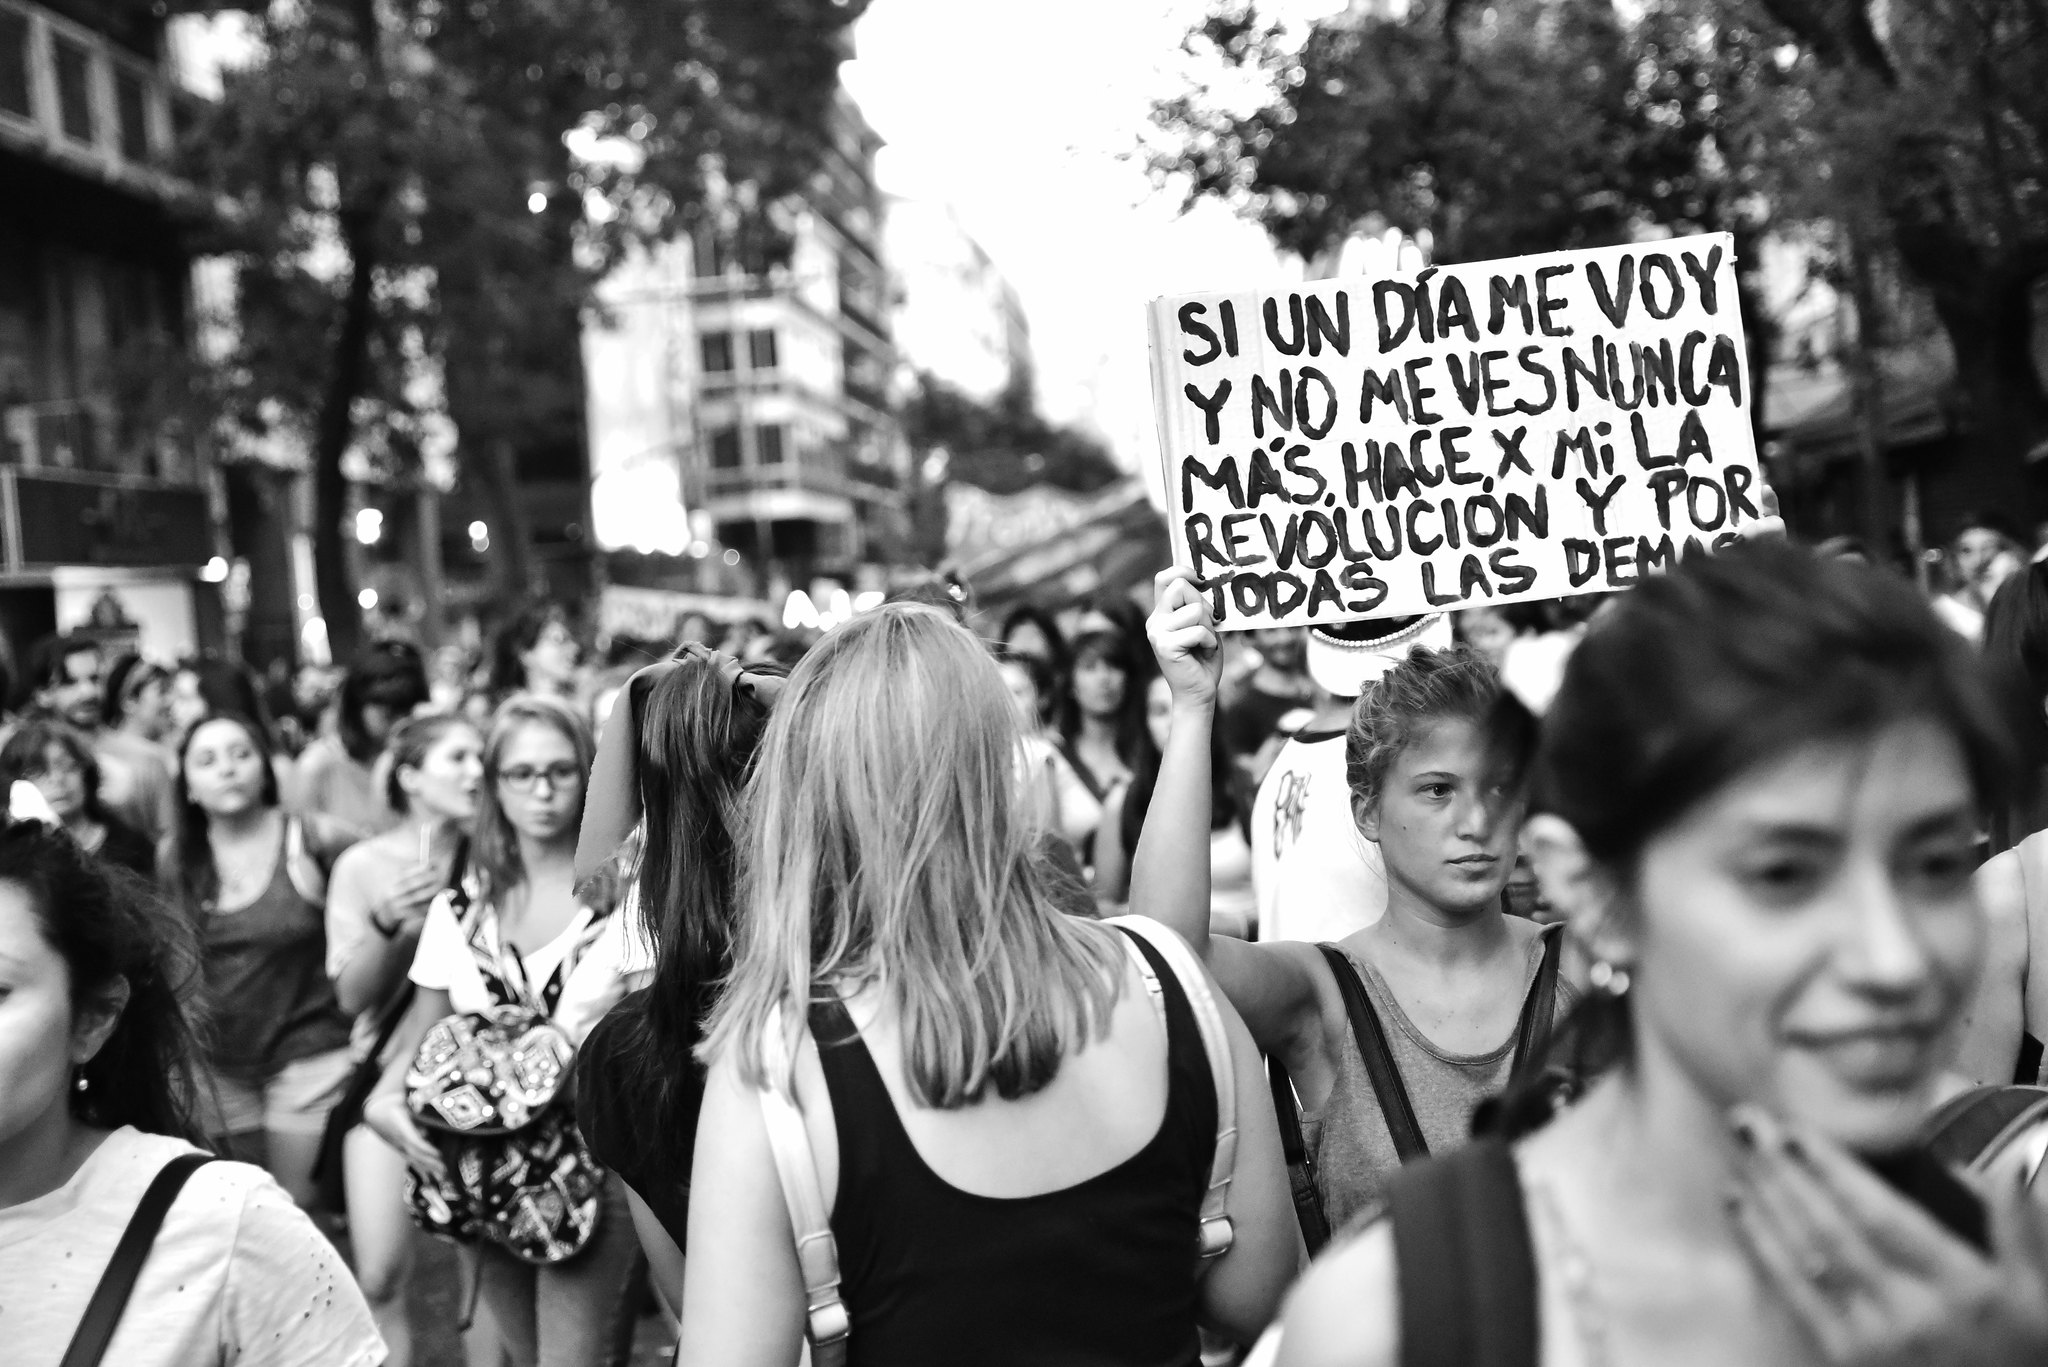 Diversität ist unsere Stärke: feministische Kämpfe in Bolivien, Ecuador und Mexiko